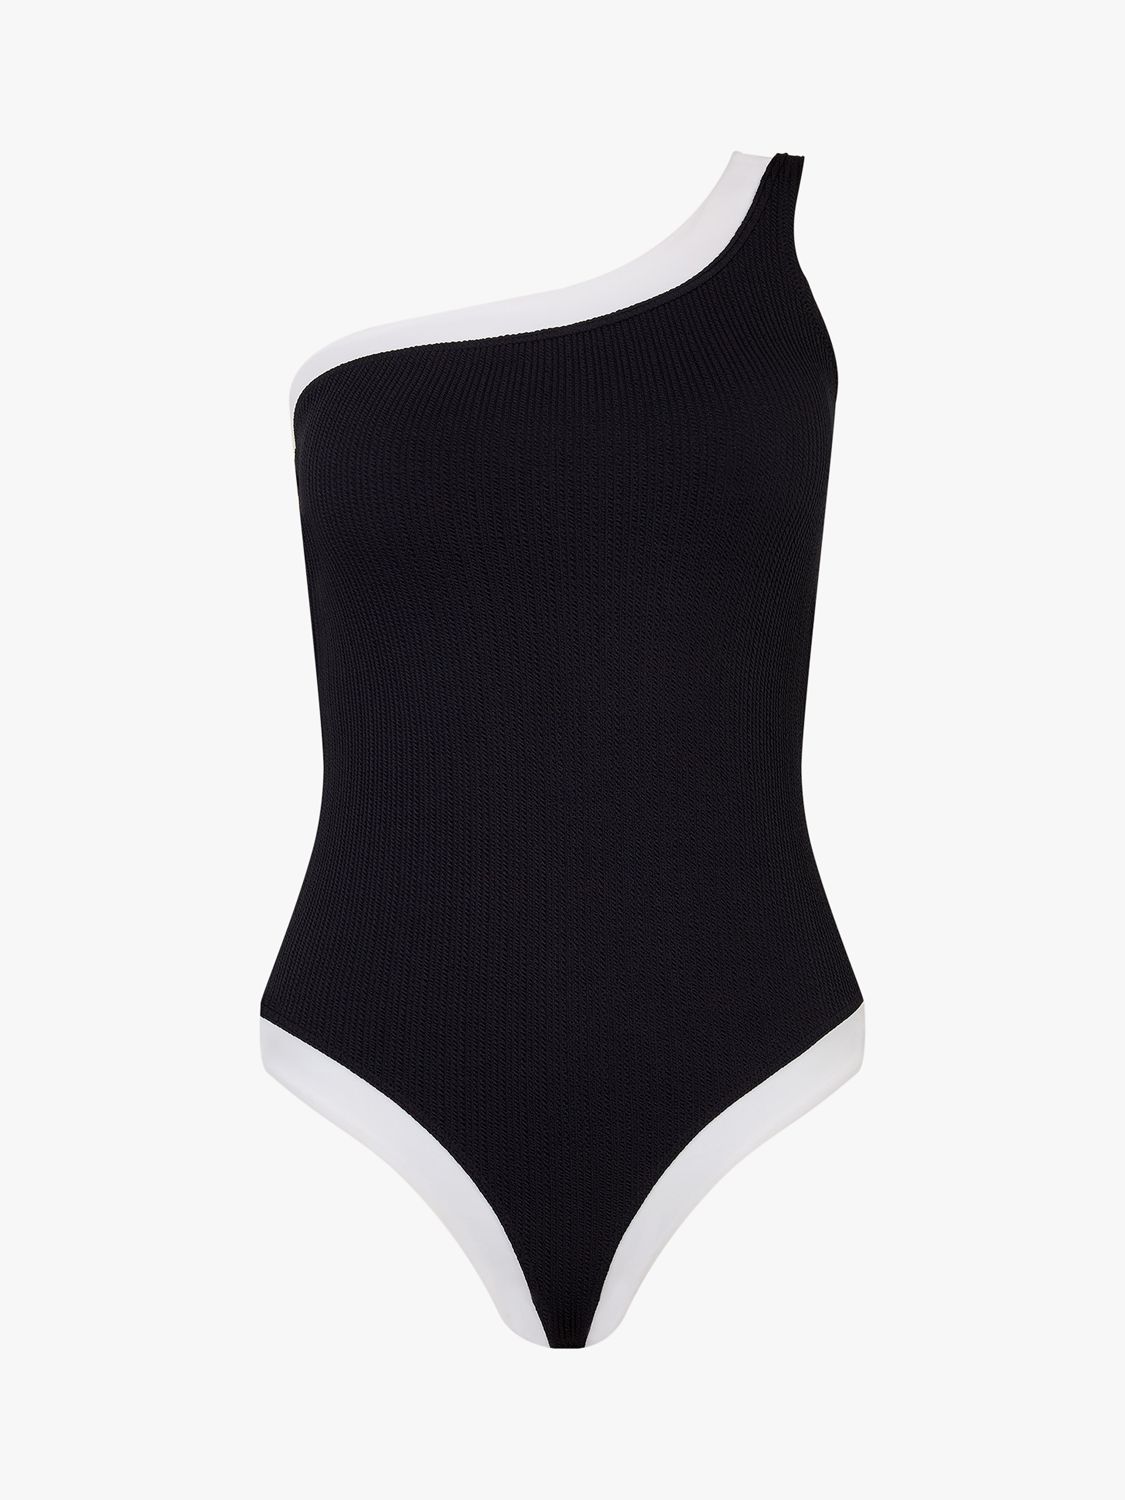 Accessorize One Shoulder Contrast Trim Swimsuit, Black, 6